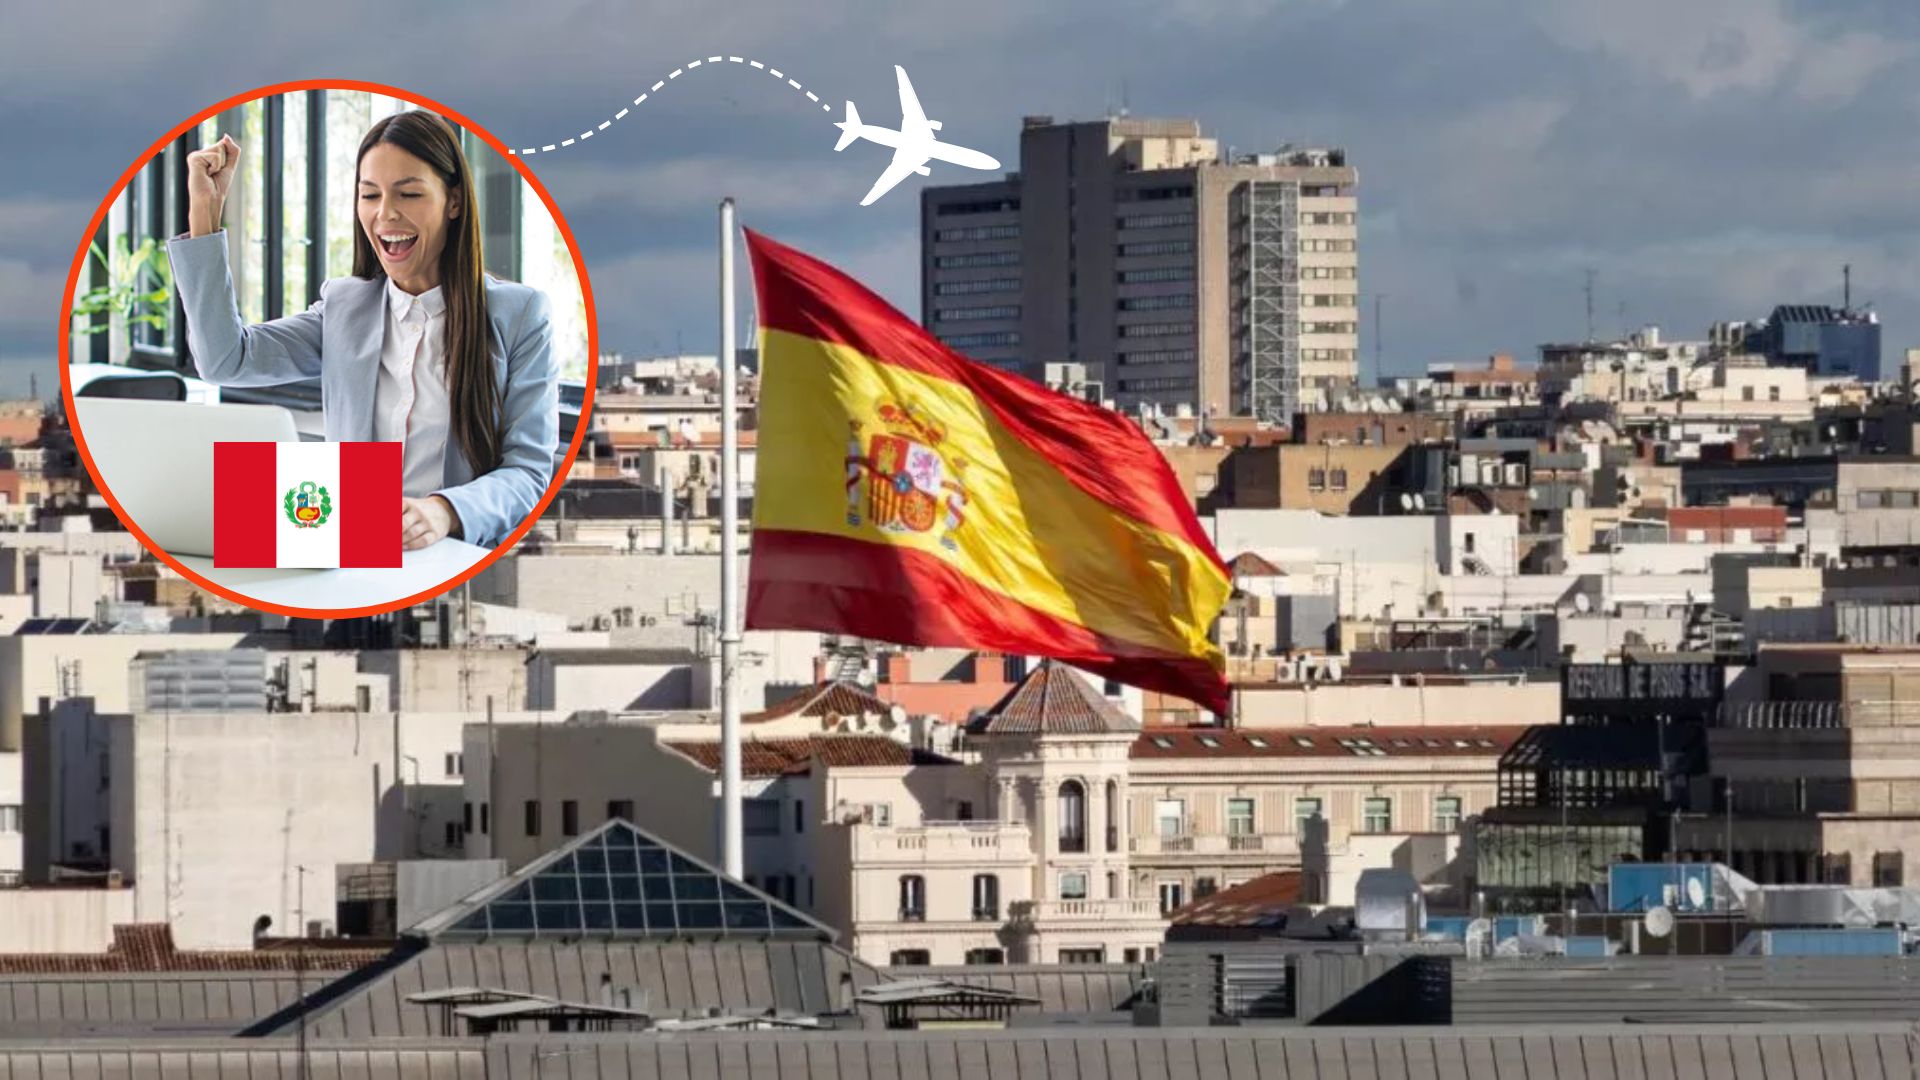 Trabajos en el extranjero para peruanos: ¿Qué hacer para viajar a España y qué requisitos debo cumplir para vivir allí?